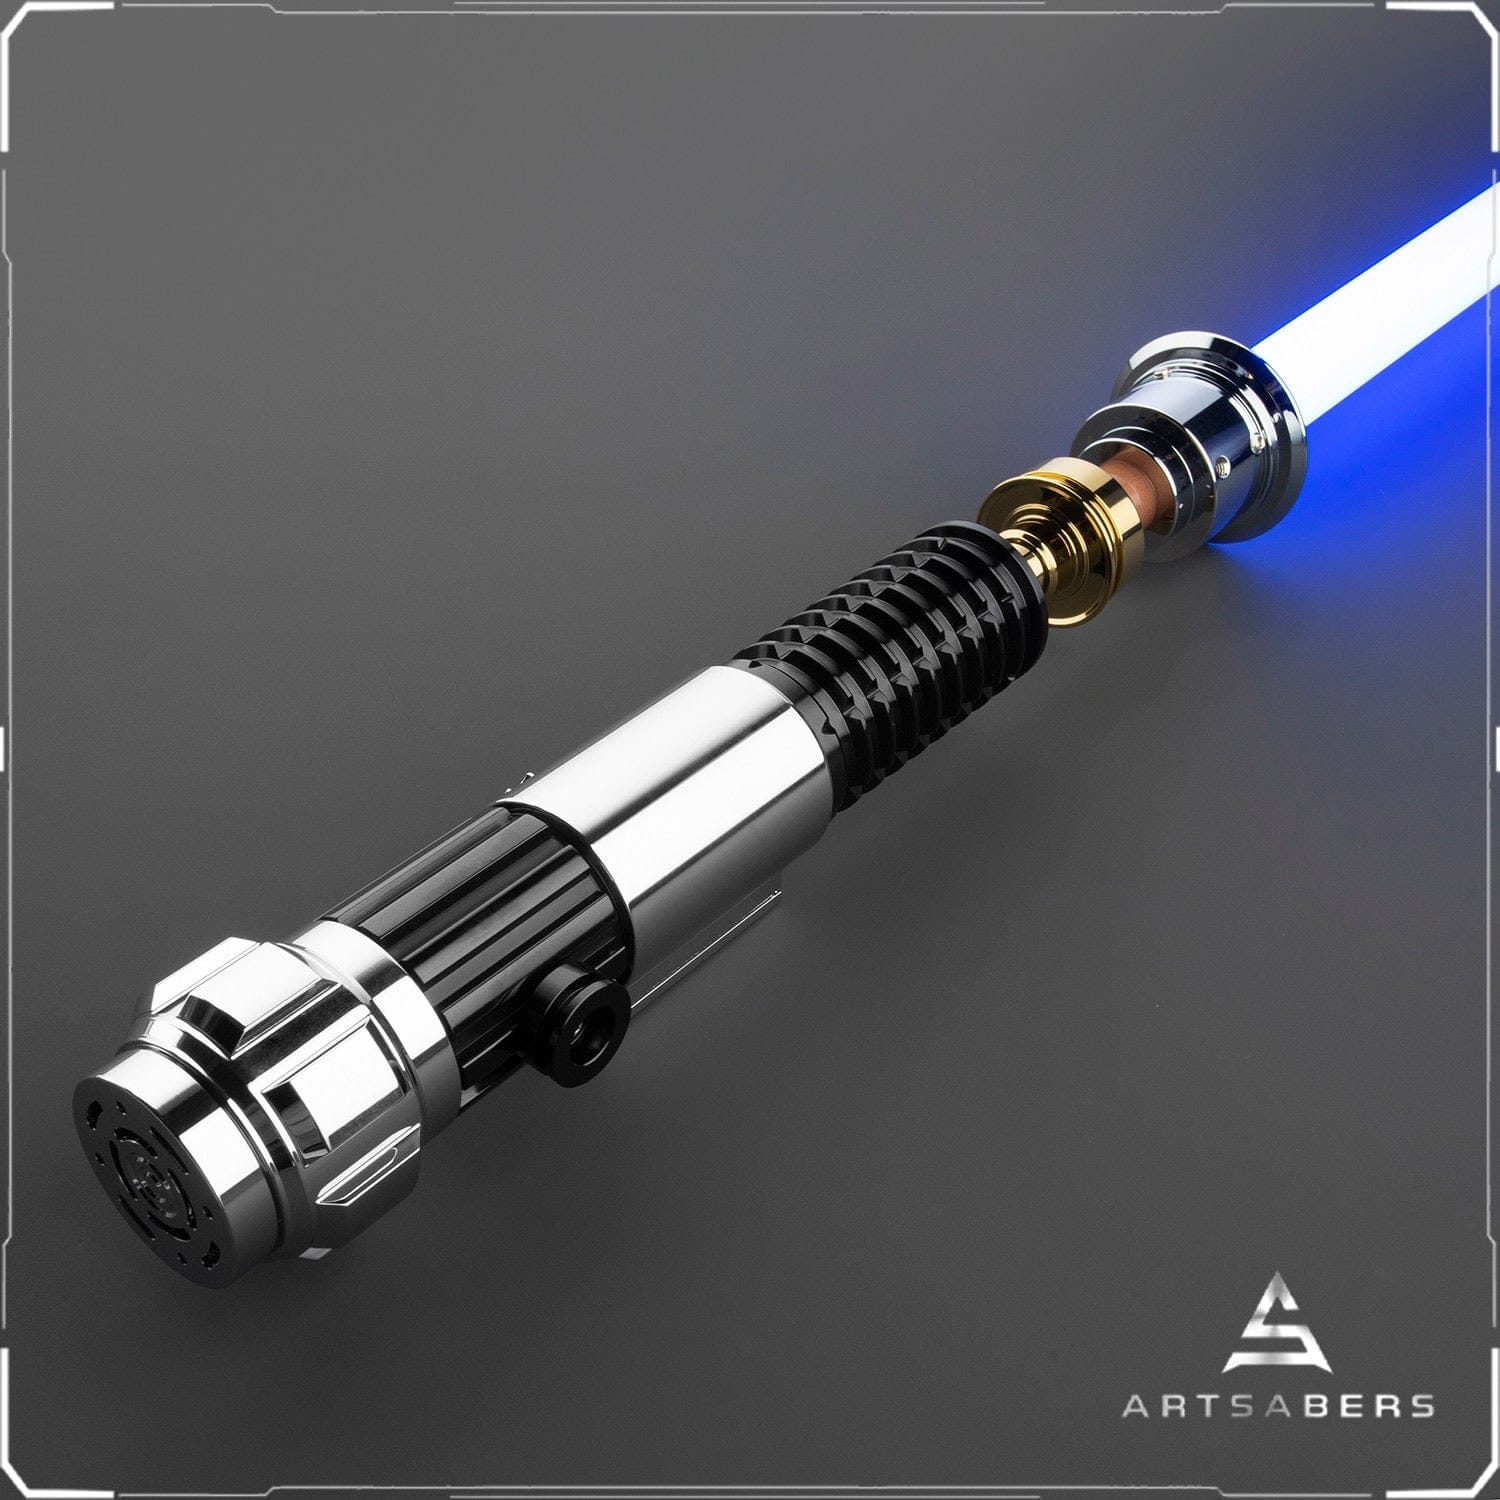 Obi Wan Kenobi Lightsaber Base Lit Lightsaber For Heavy Dueling Kenobi Movie Replica ARTSABERS 